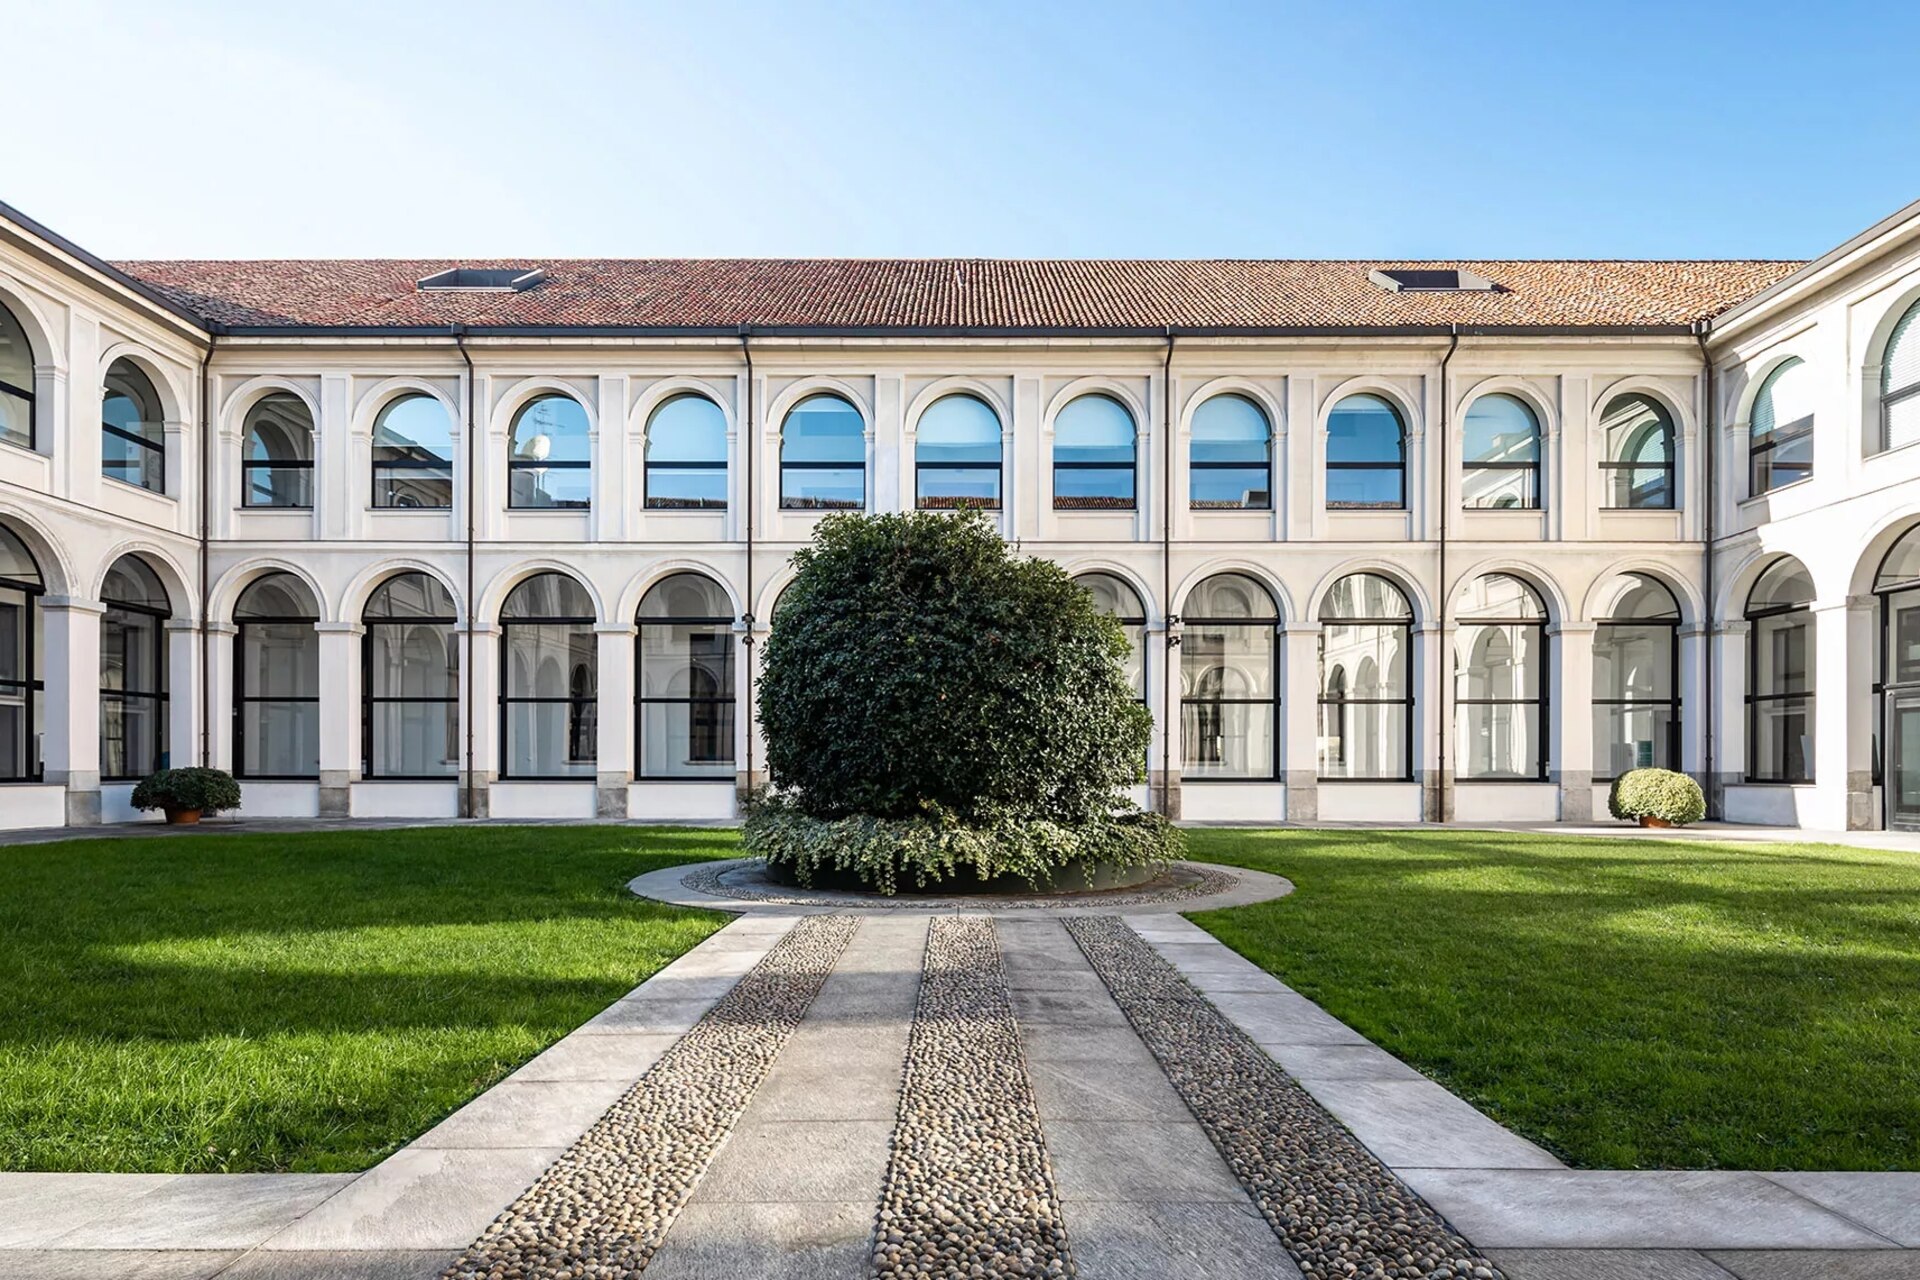 Metafòrum: el Palazzo delle Stelline, situat al cor de Milà prop de la famosa església de Santa Maria delle Grazie, serà el recinte verd de l'edició 2023 del Metafòrum